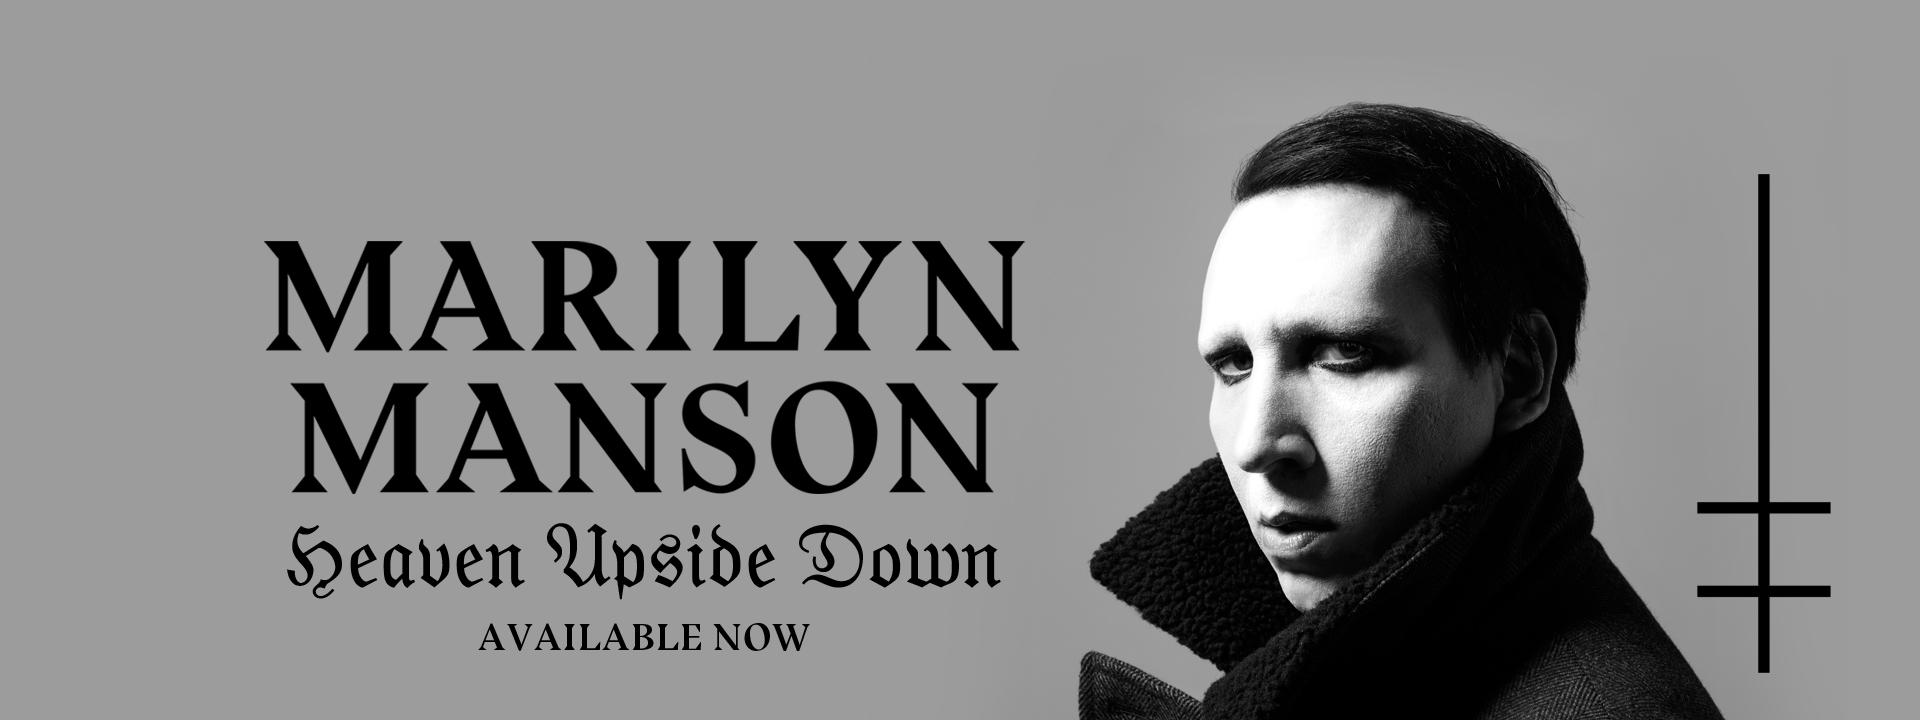 Marilyn Manson Original Logo - MARILYN MANSON - Official WEBSITE